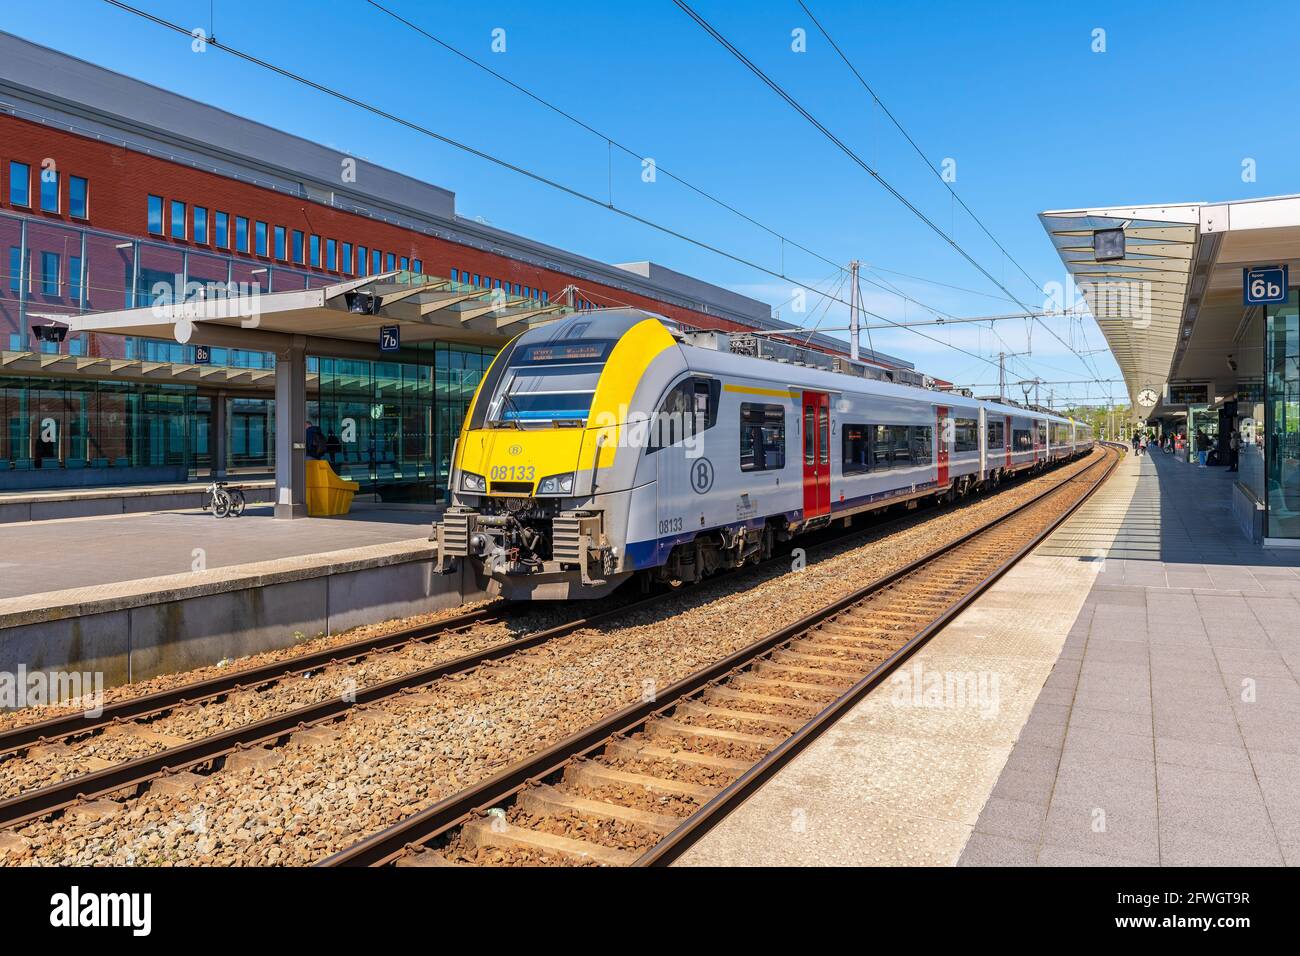 Zug Lokomotive mit Waggons im Bahnhof von Brügge mit Gleisen und Bahnsteigen, Belgien. Stockfoto